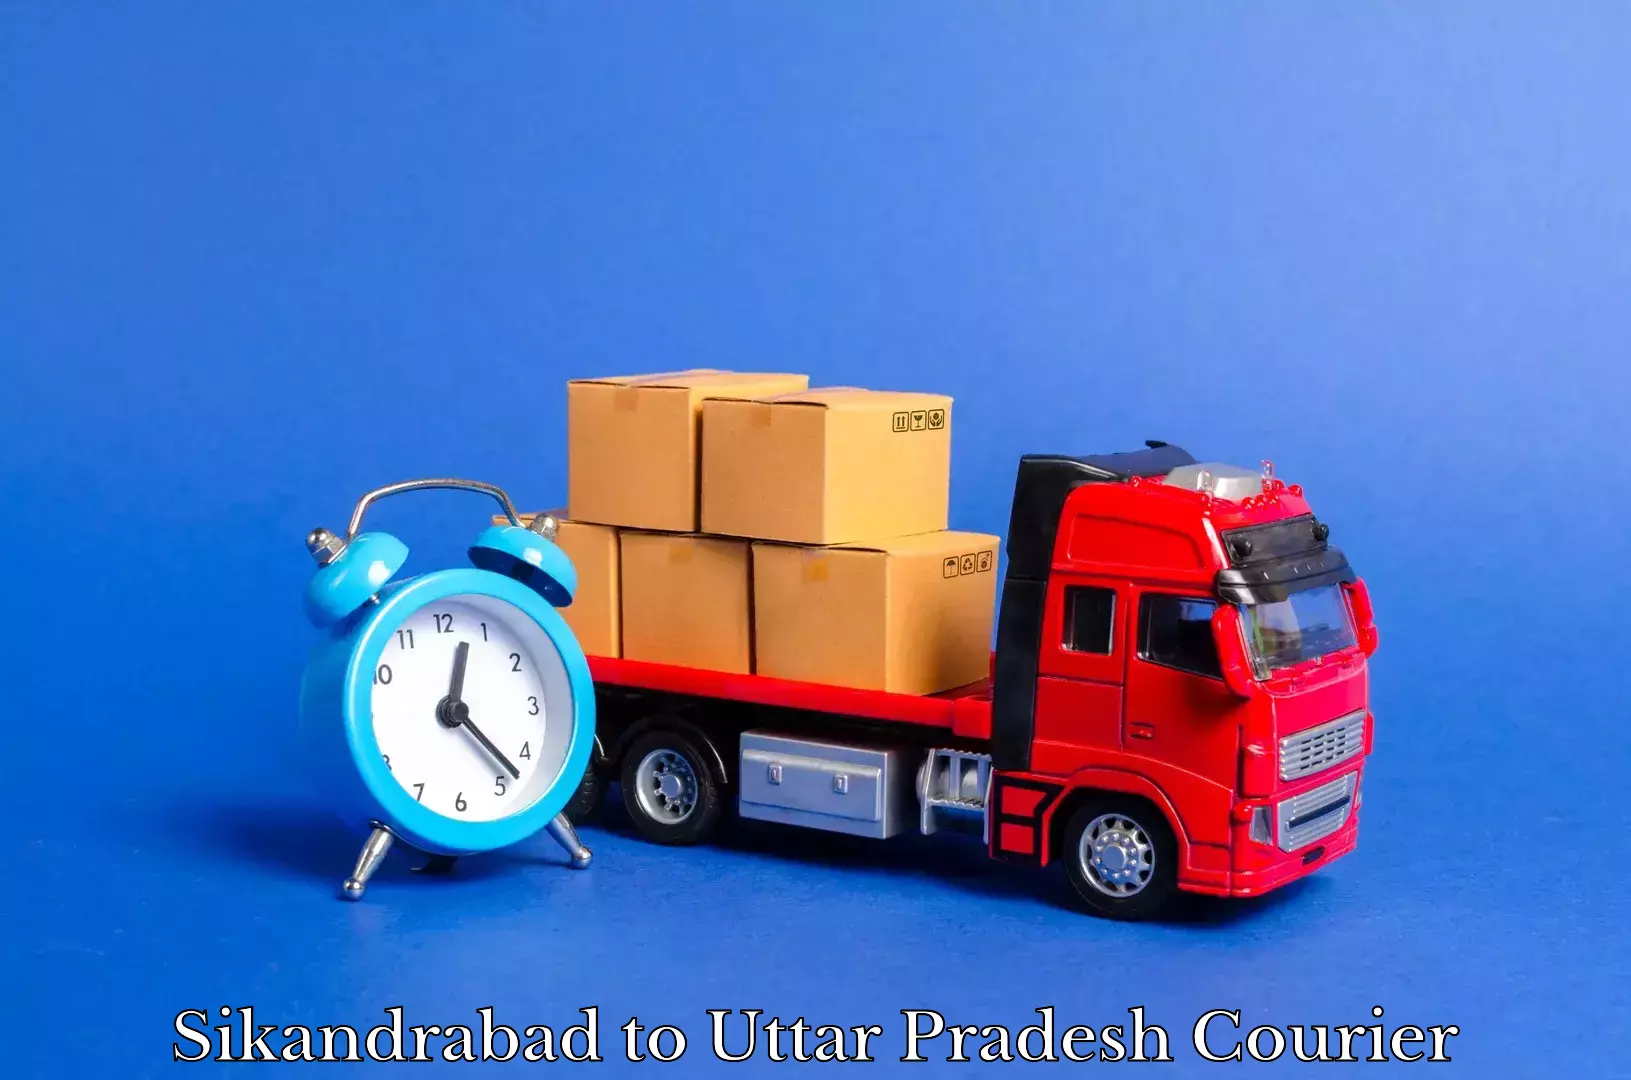 Furniture delivery service Sikandrabad to Khatauli